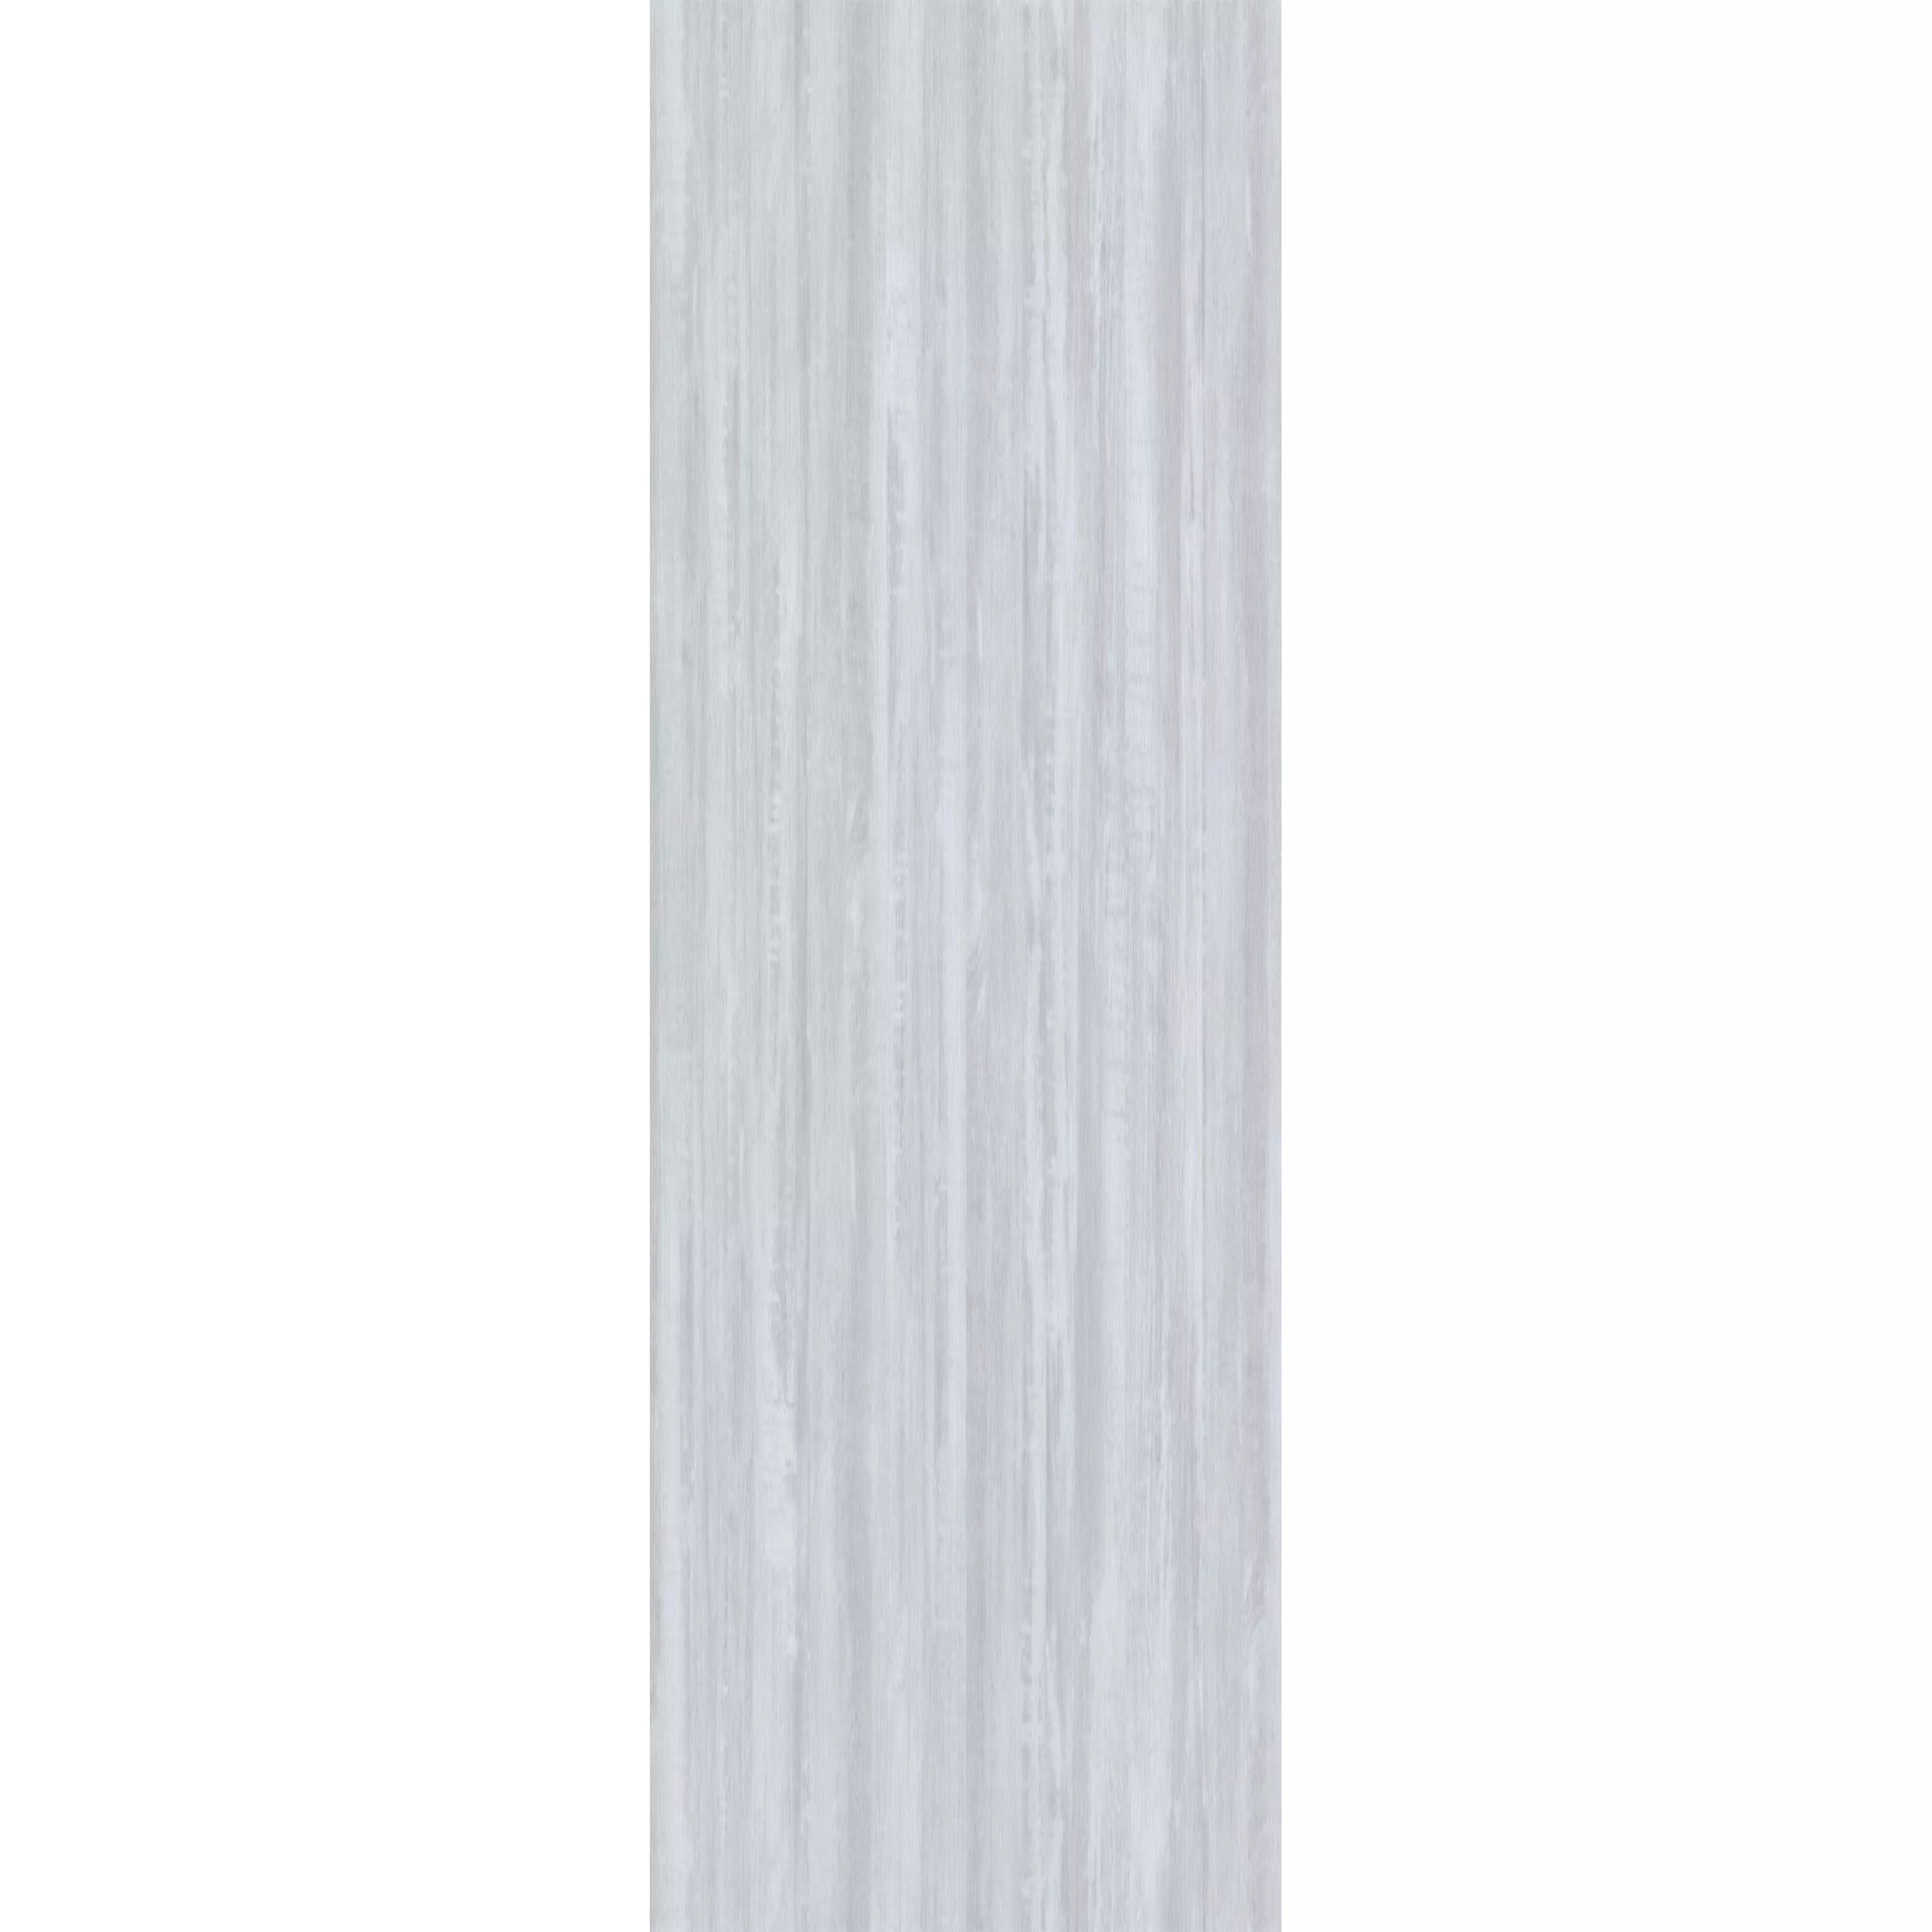 Suelo De Vinilo Sistema De Clic Snowwood Blanco 17,2x121cm